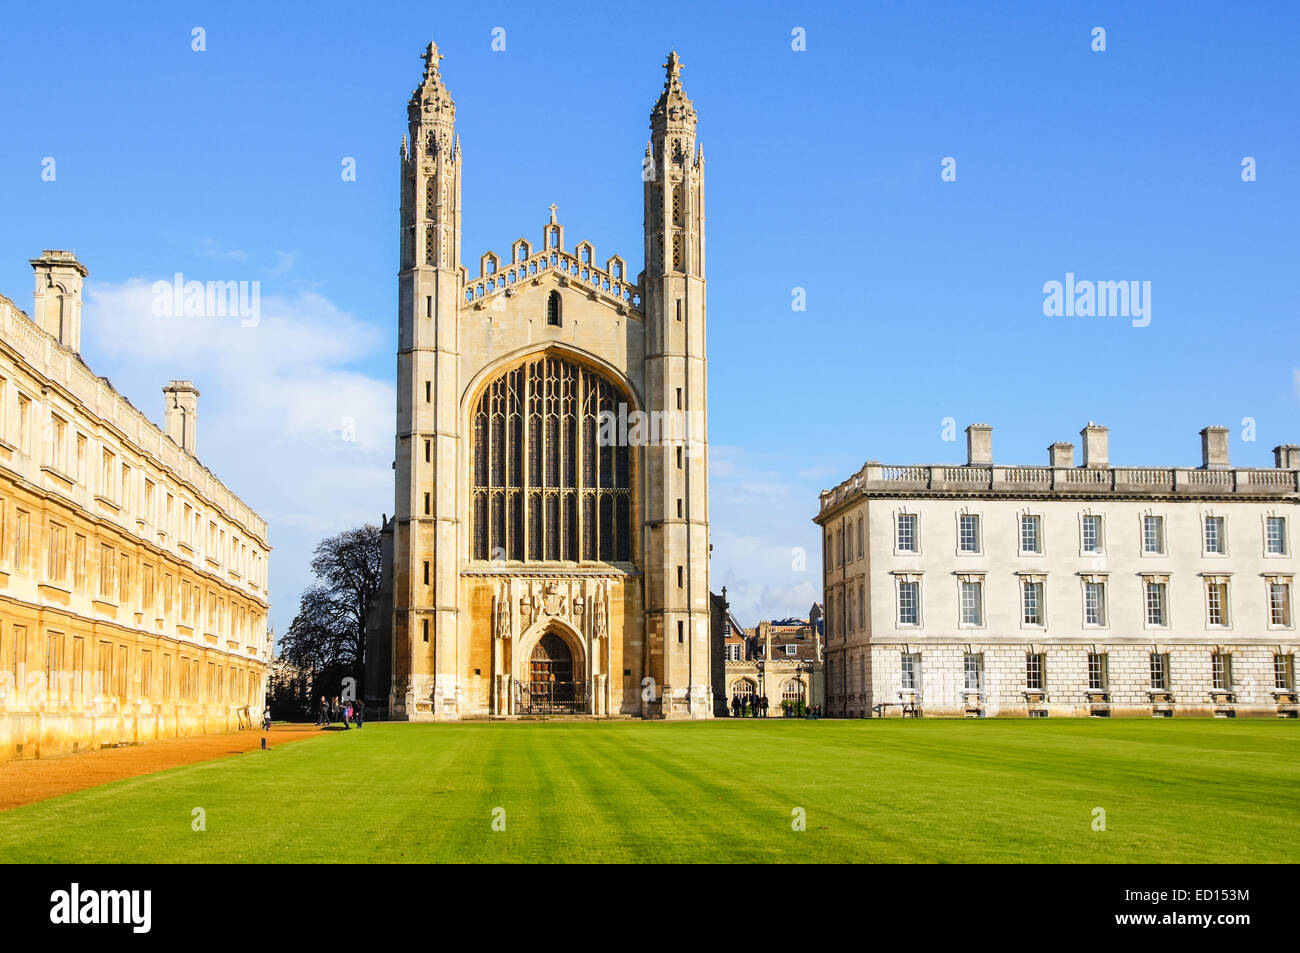 King's College Chapel à l'Université de Cambridge, vue de dos, Cambridge Cambridgeshire Angleterre Royaume-Uni Royaume-Uni Banque D'Images